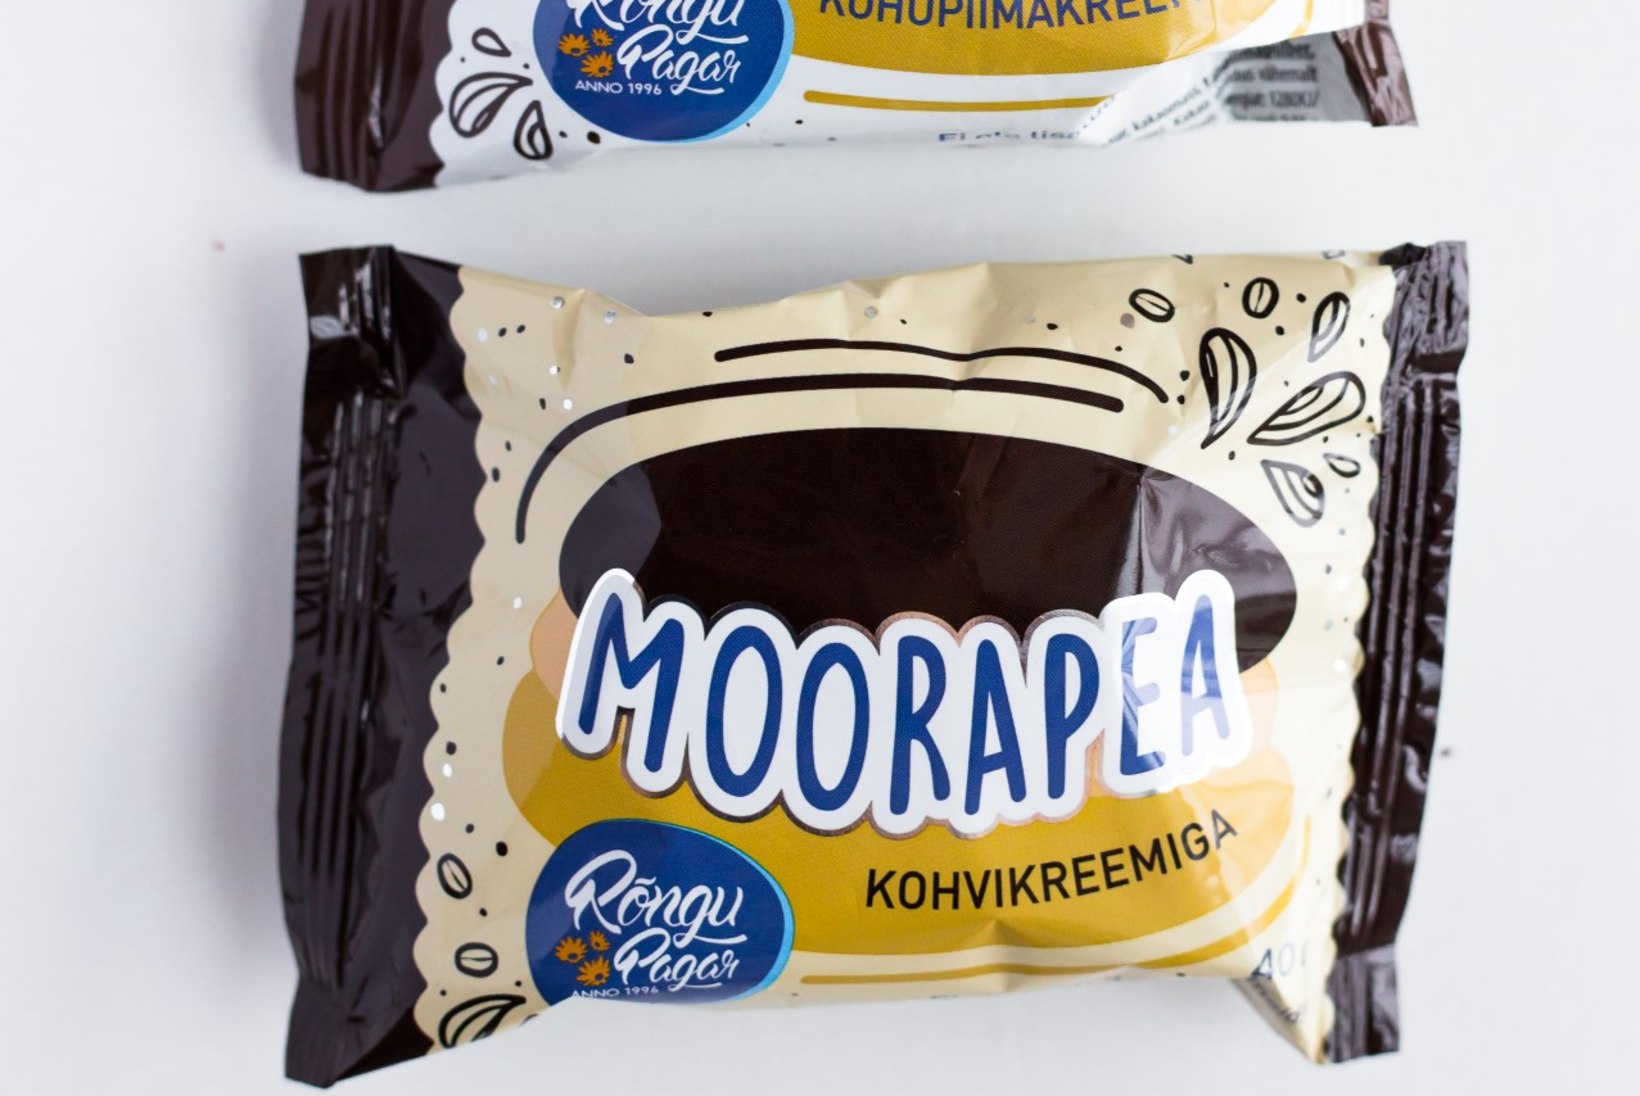 Eesti maitsetest nostalgiliste moorapeadeni ehk selle nädala toidu-uudised